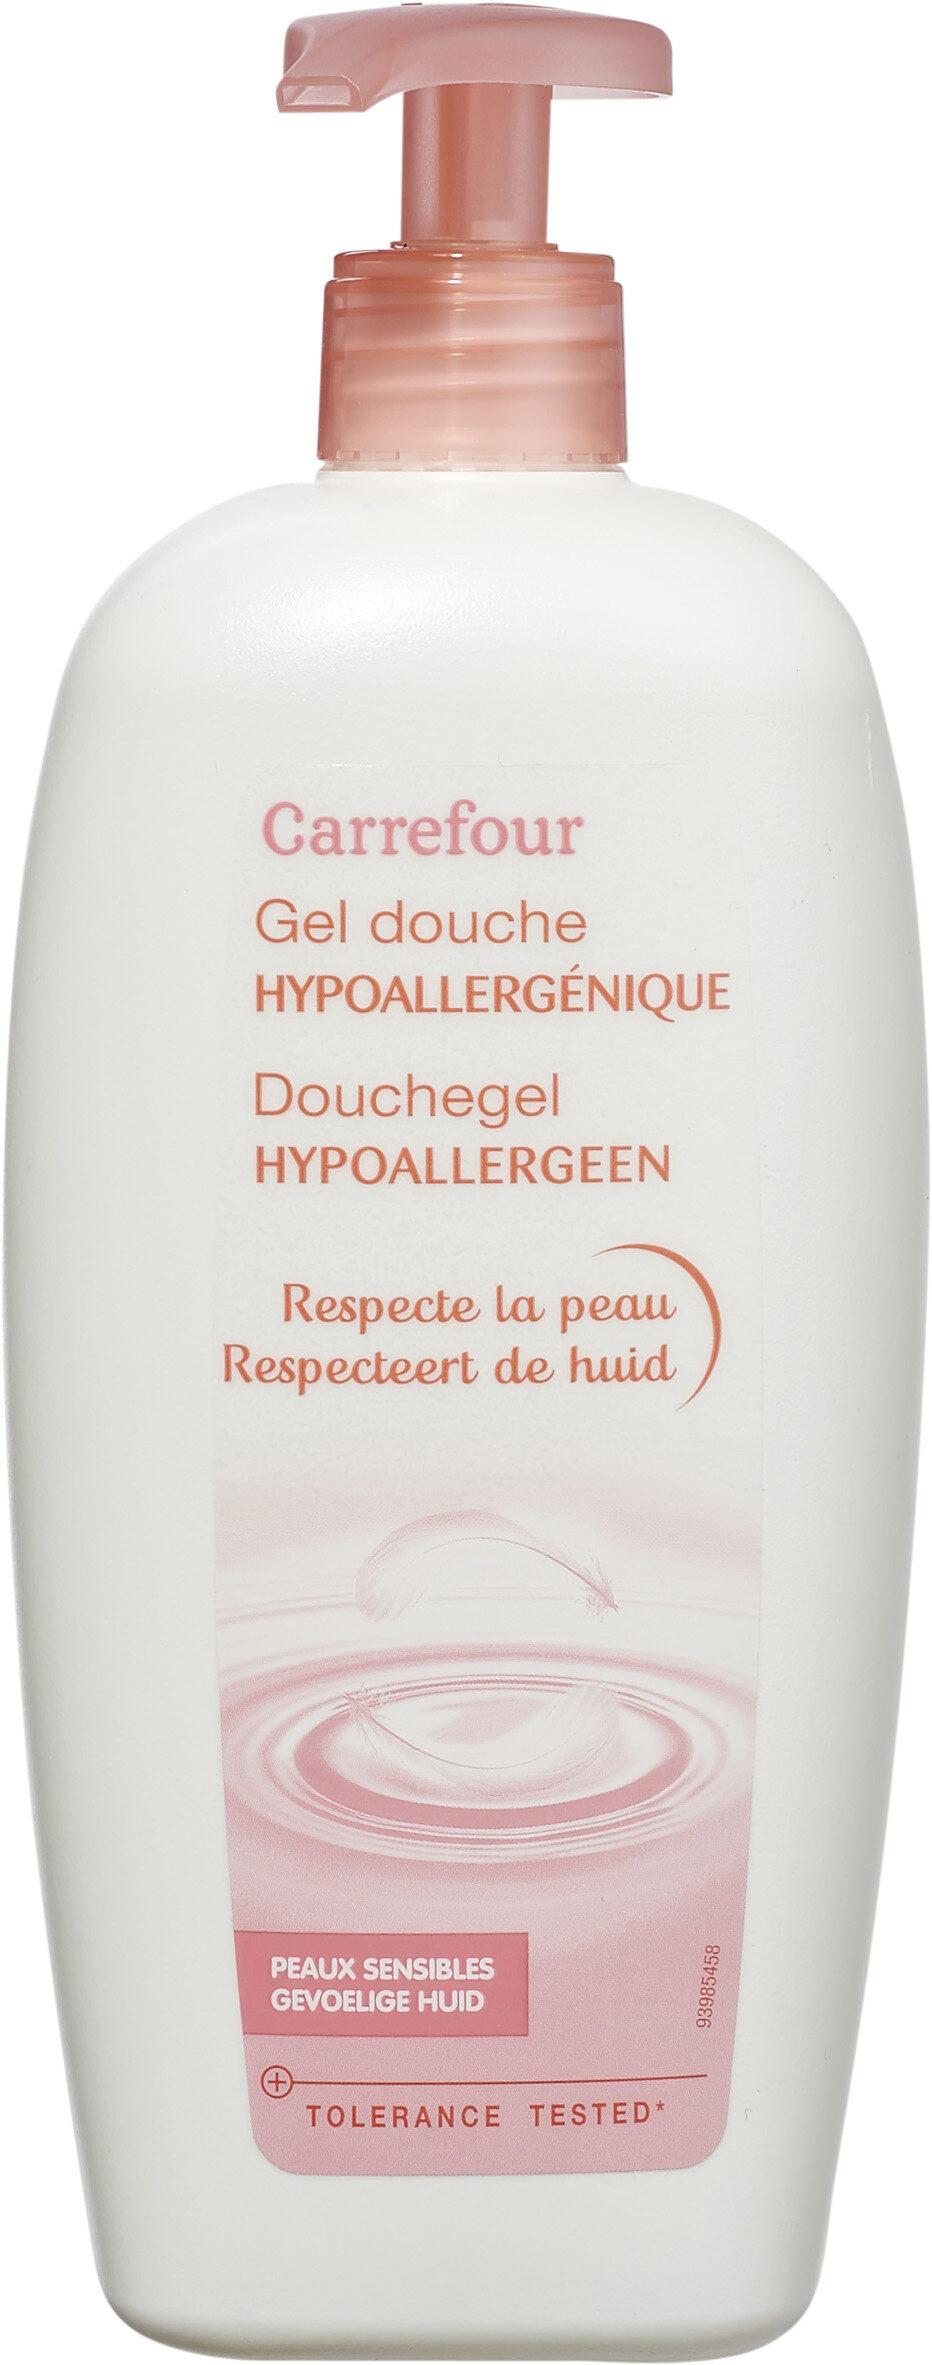 Gel douche hypoallergénique peaux sensibles - Product - fr